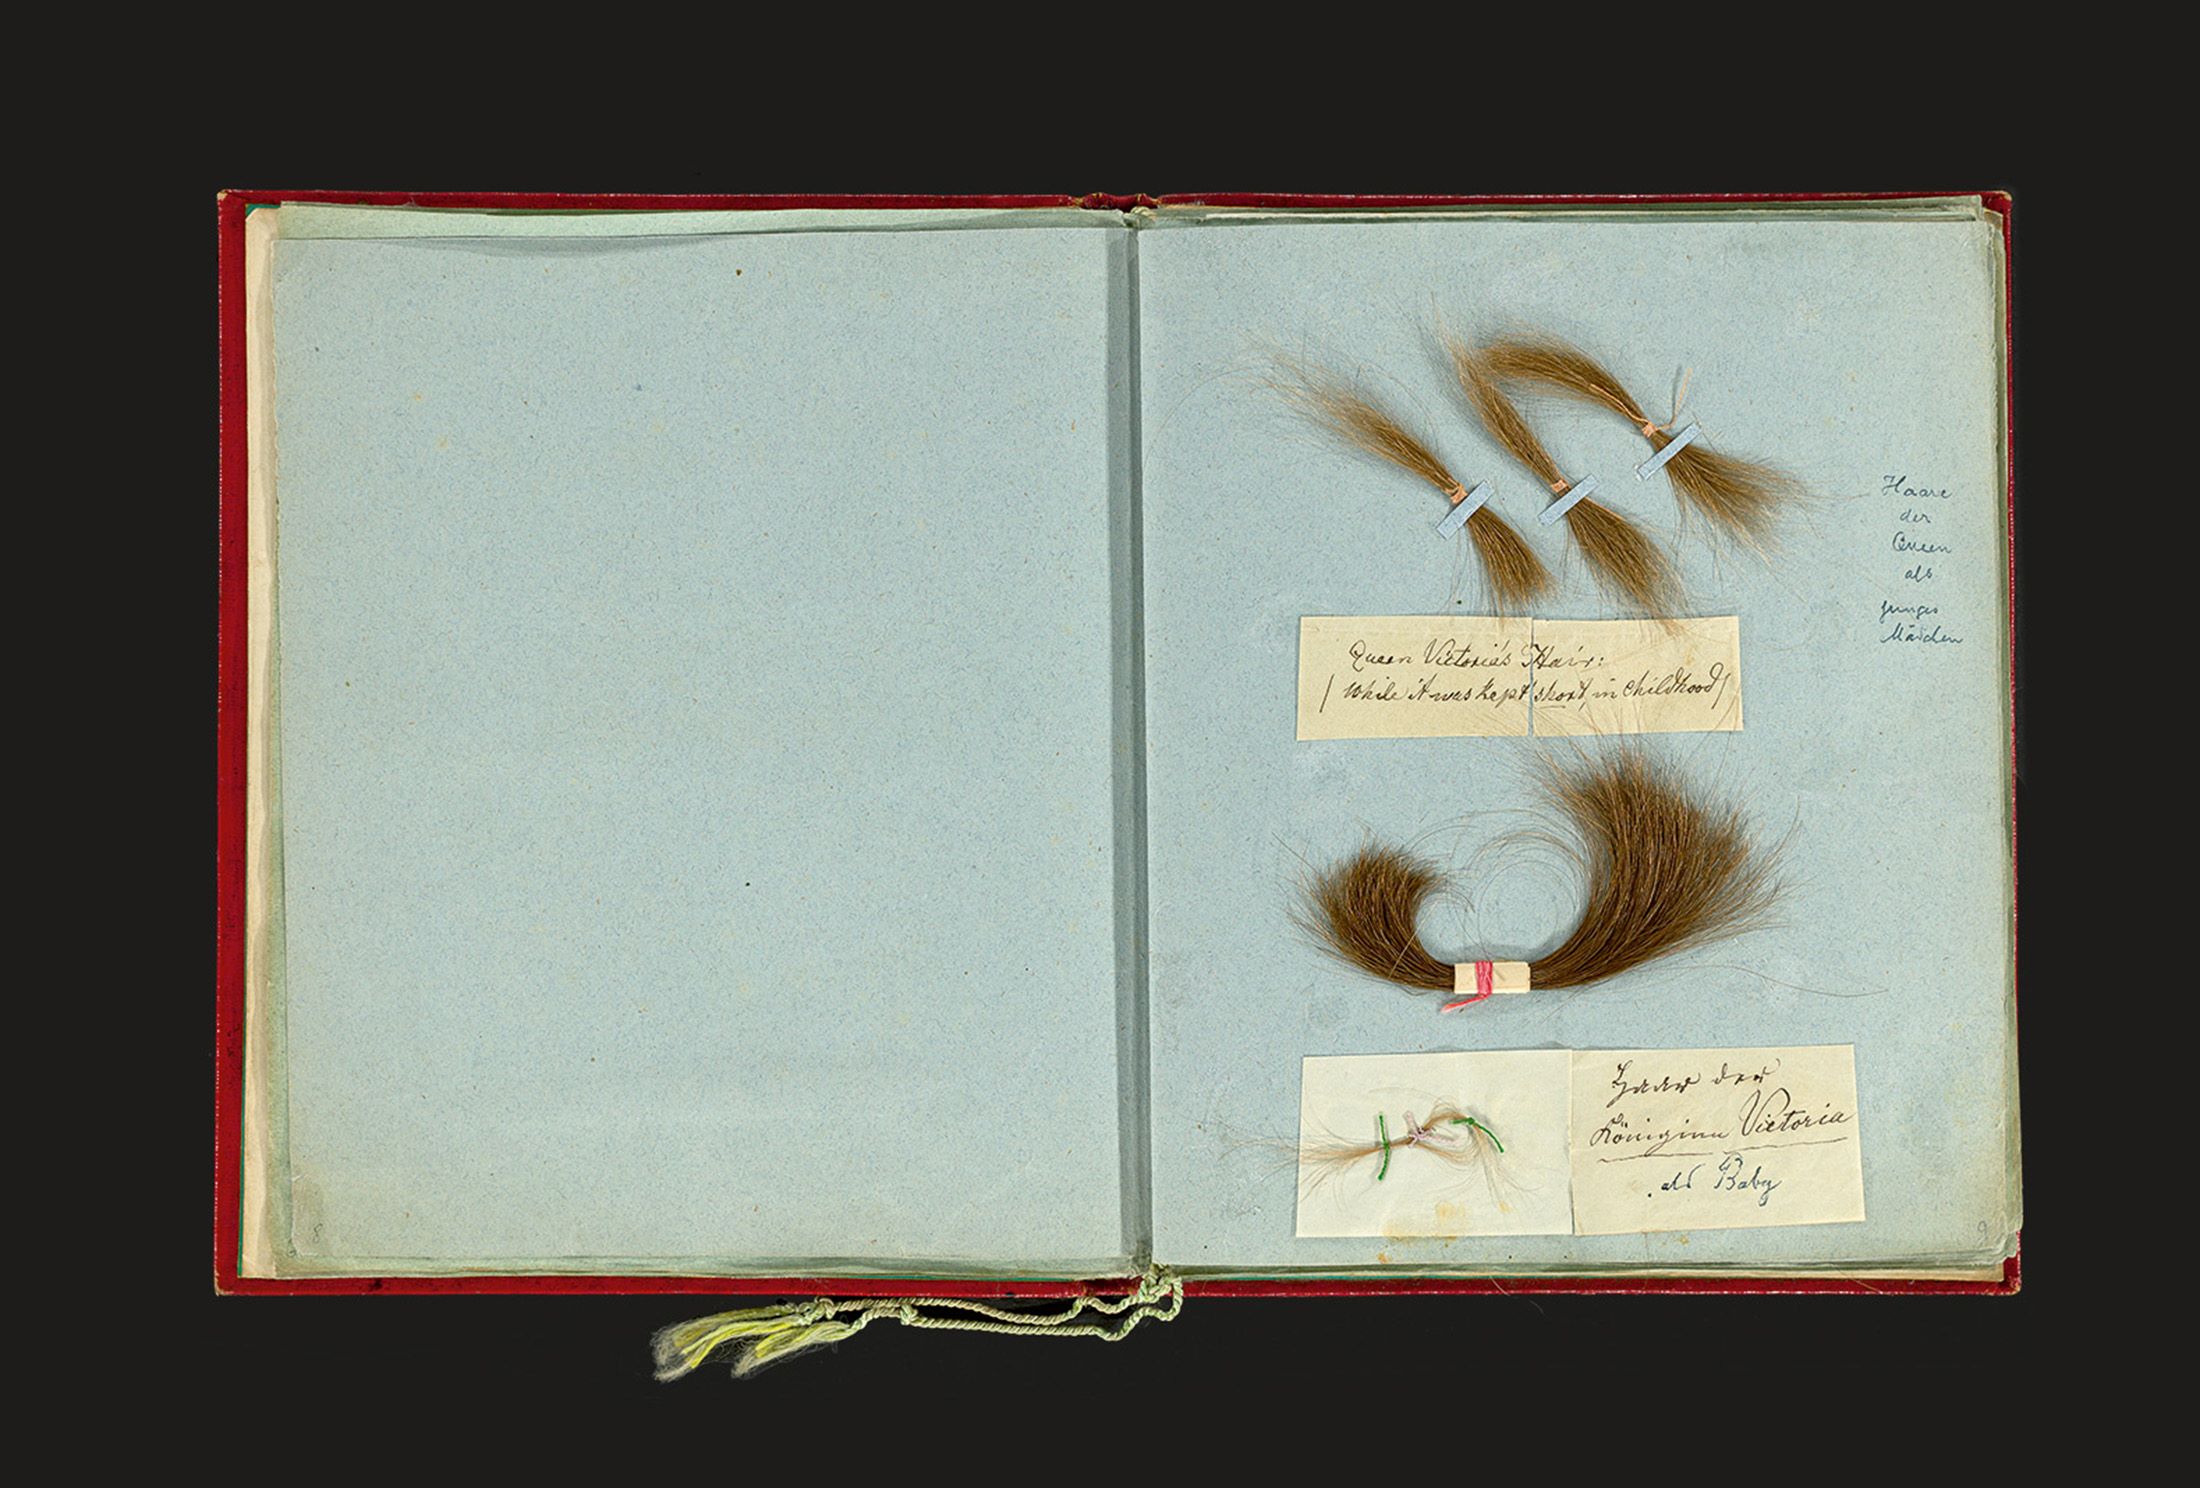 بعض من خصلات شعر الملكة فيكتوريا التي تضمها المجموعة (Grisebach)